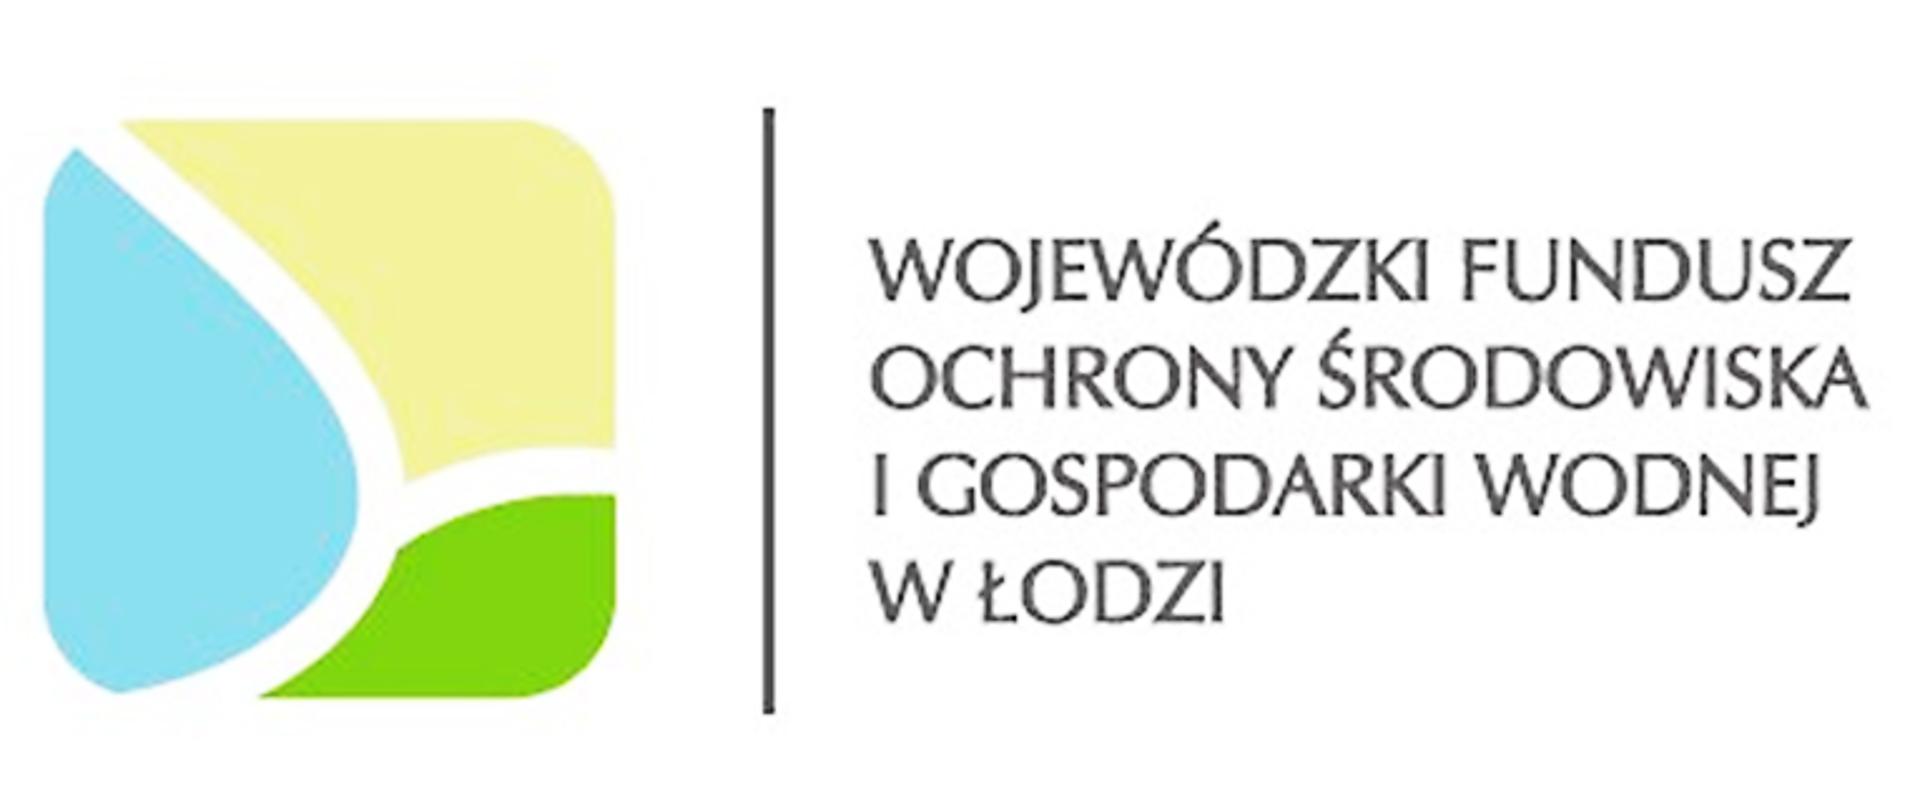 Logo przedstawiające napis Wojewódzki Fundusz Ochrony Środowiska i Gospodarki Wodnej w Łodzi, po lewej stronie napisu grafika w postaci trzech brył o nieokreślonym kształcie barwy żółtej, błękitnej i zielonej, pomiędzy grafika a napisem pionowa linia barwy czarnej